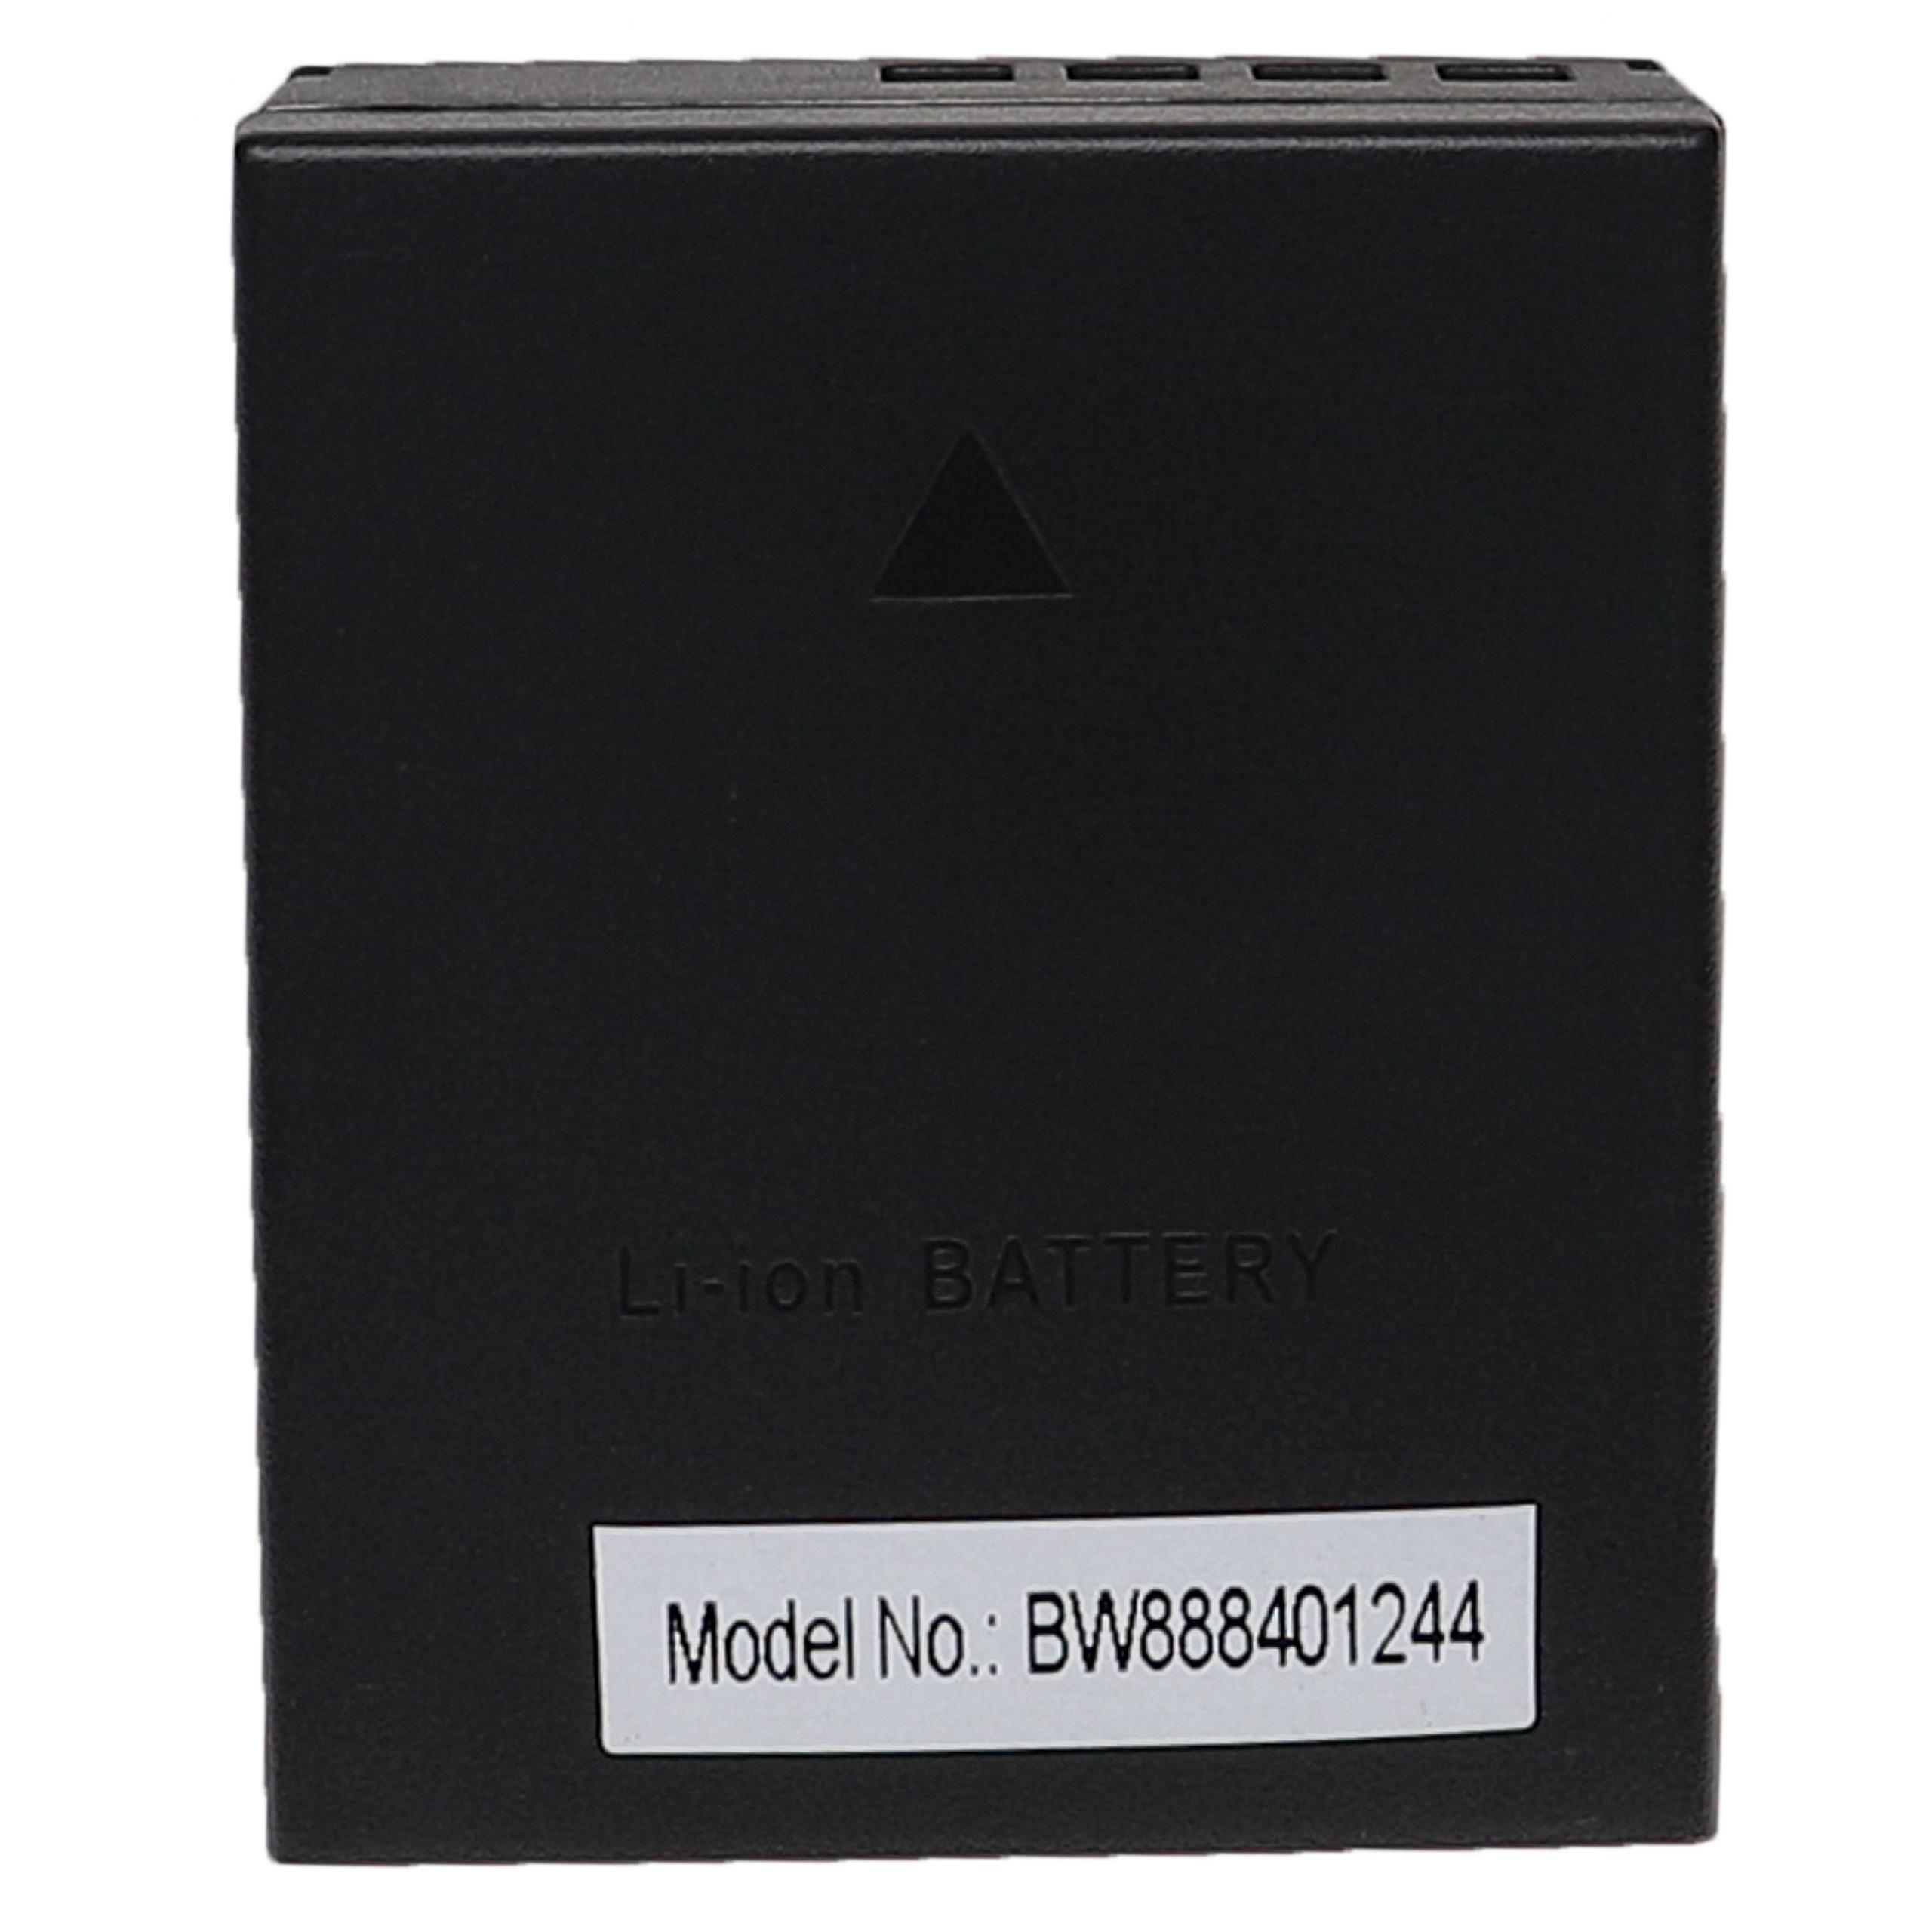 Batteries (3x pièces) remplace Olympus BLH-1 pour appareil photo - 2000mAh 7,4V Li-ion